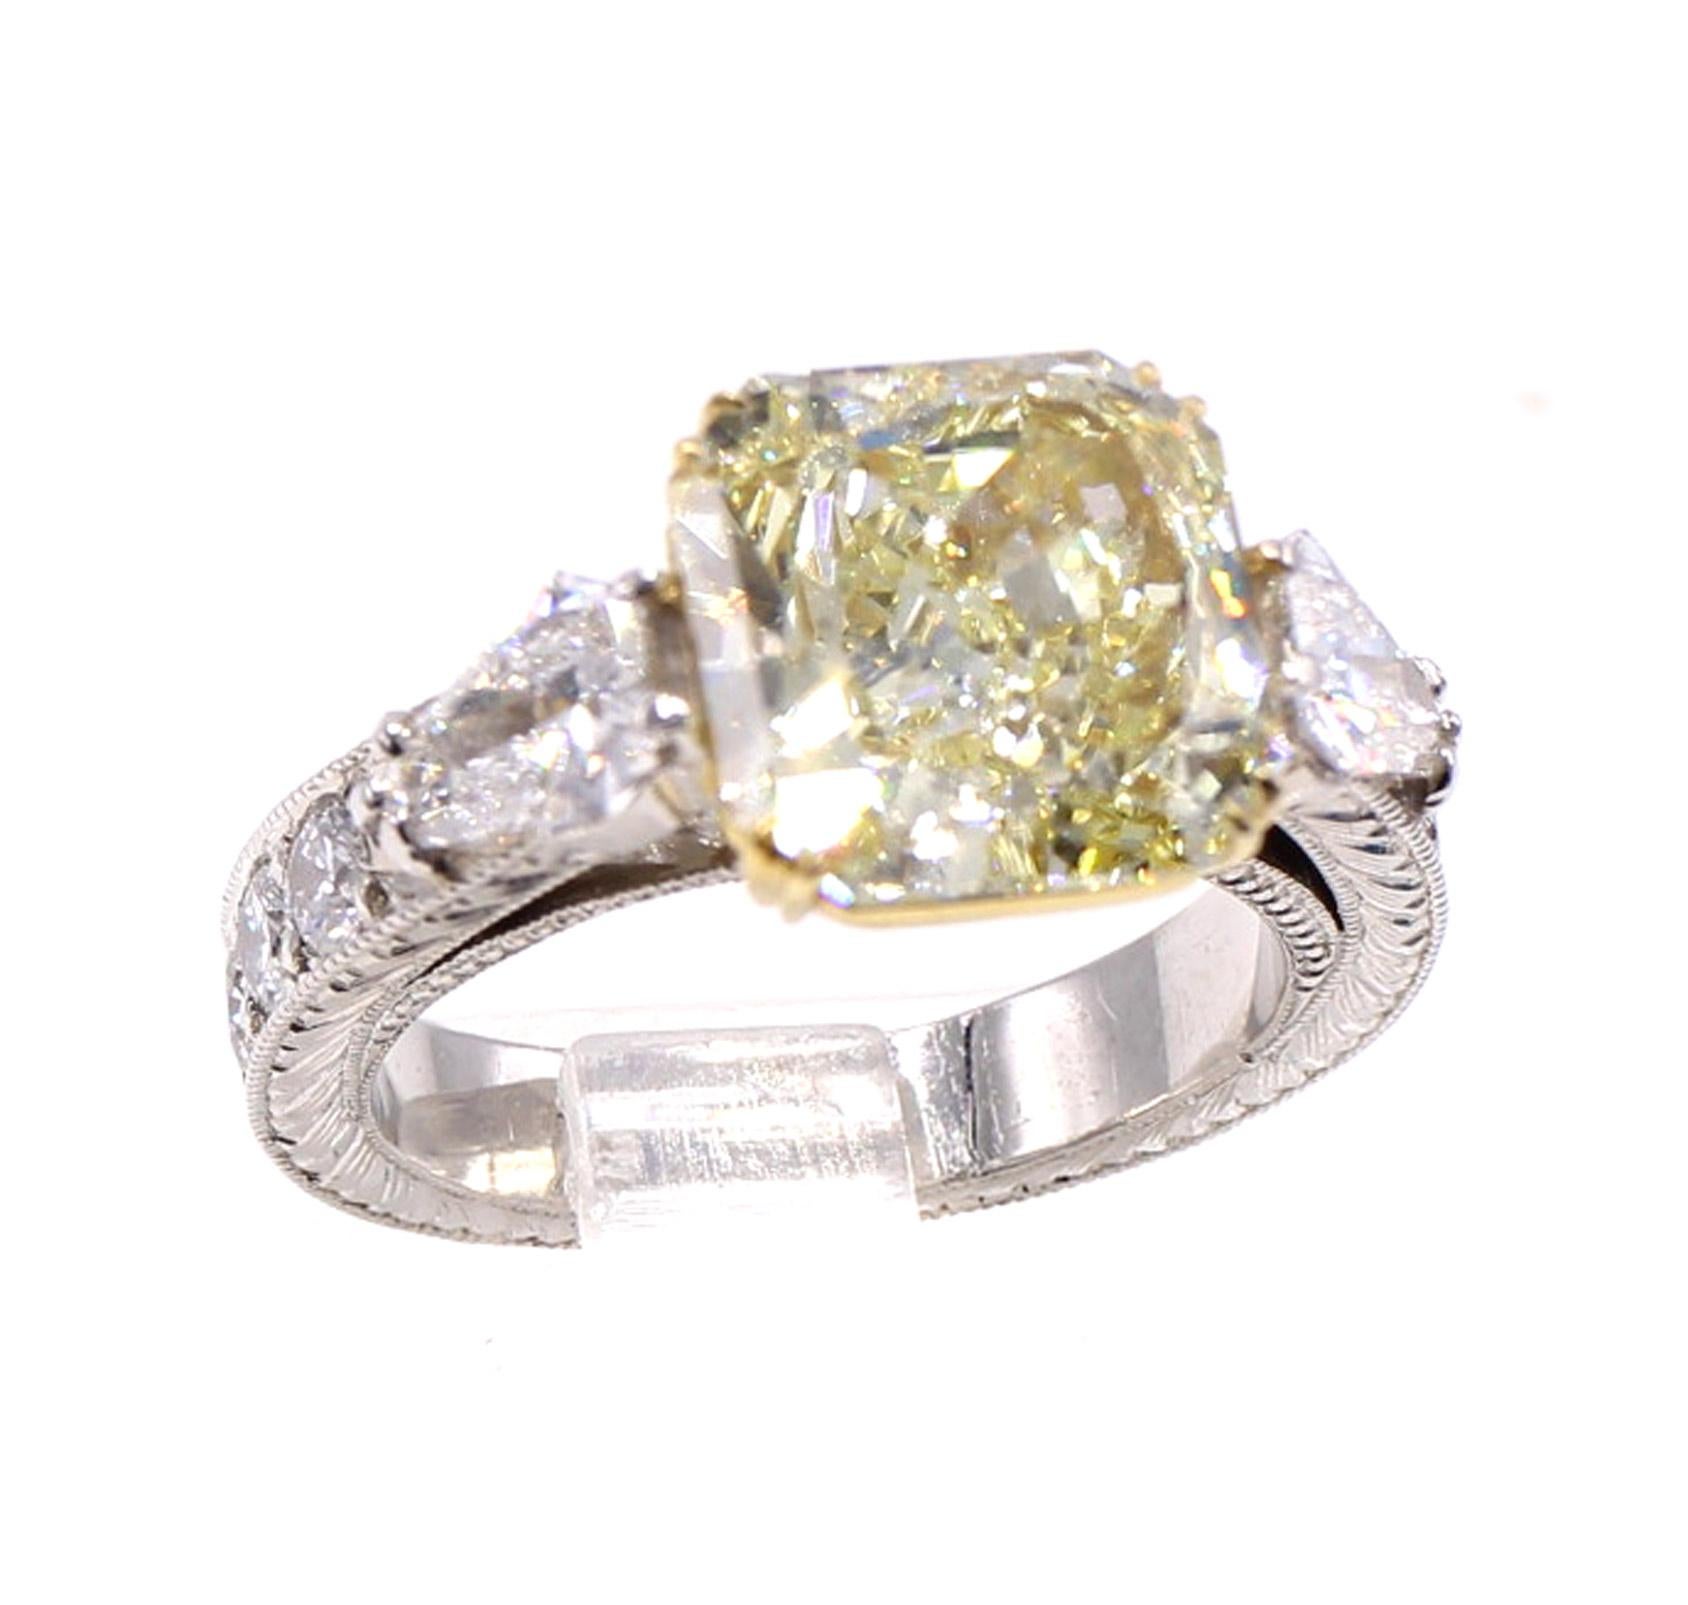 Das Herzstück dieses wunderschön gestalteten und handgefertigten Verlobungsrings ist ein zitronengelber Diamant mit einem Gewicht von 4,55 Karat. Mit einem Tiefenanteil von 56,5 und einem Durchmesser von 9,84 mal 9,78 Millimetern ist dieser Diamant